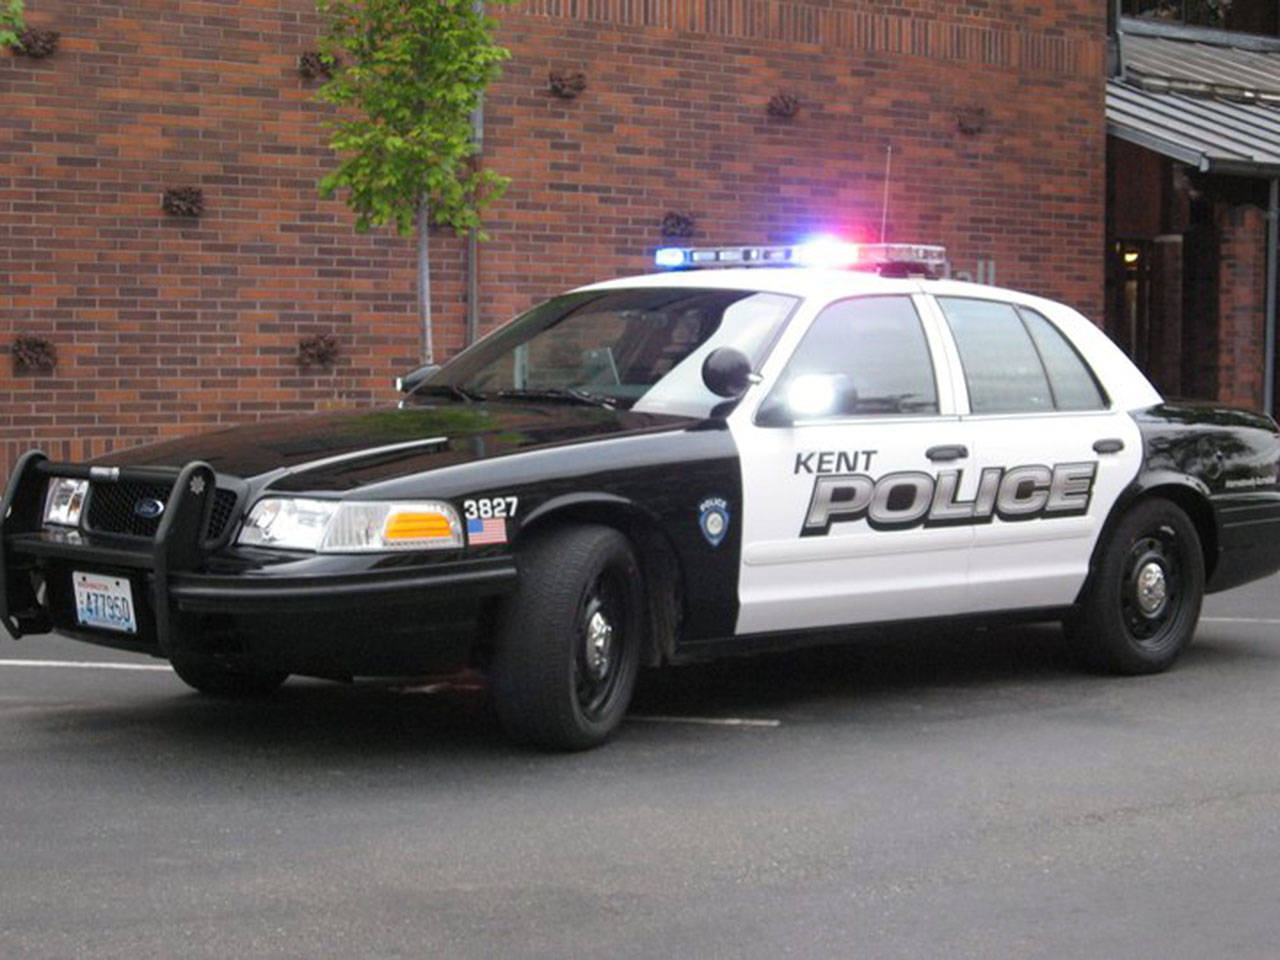 Kent officers bust 10 men in prostitution sting at motel | Police Blotter